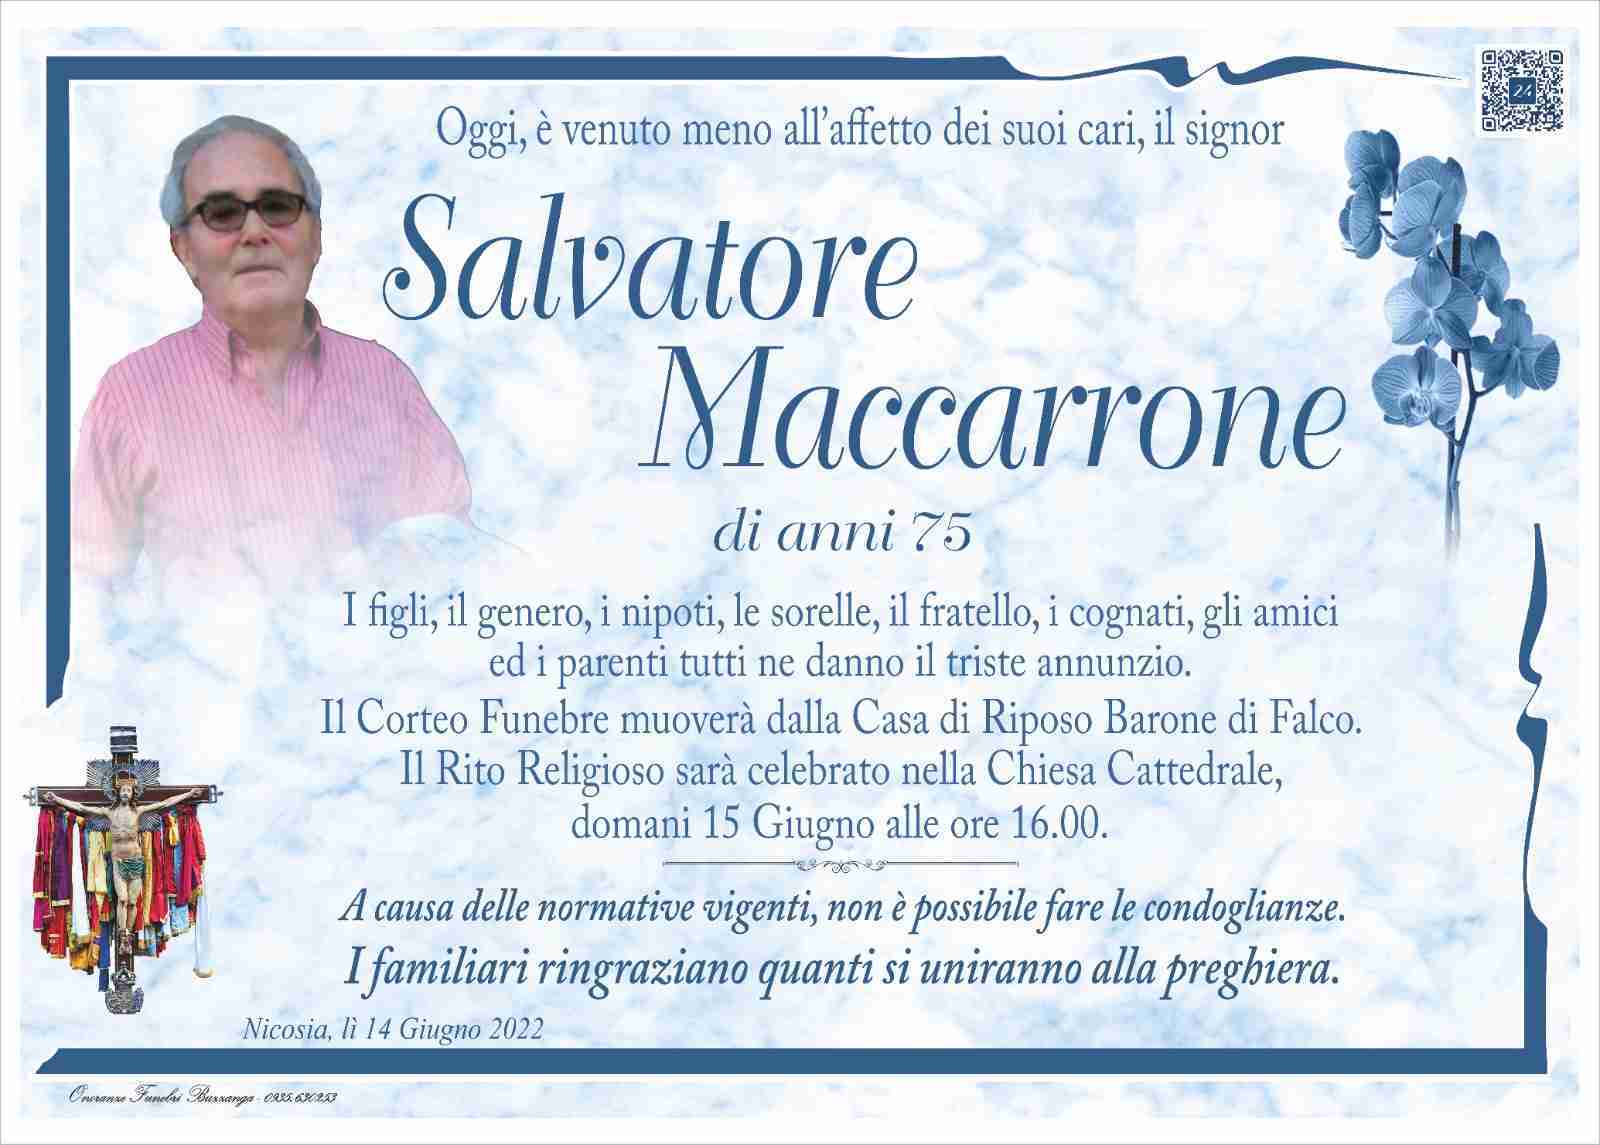 Salvatore Maccarrone